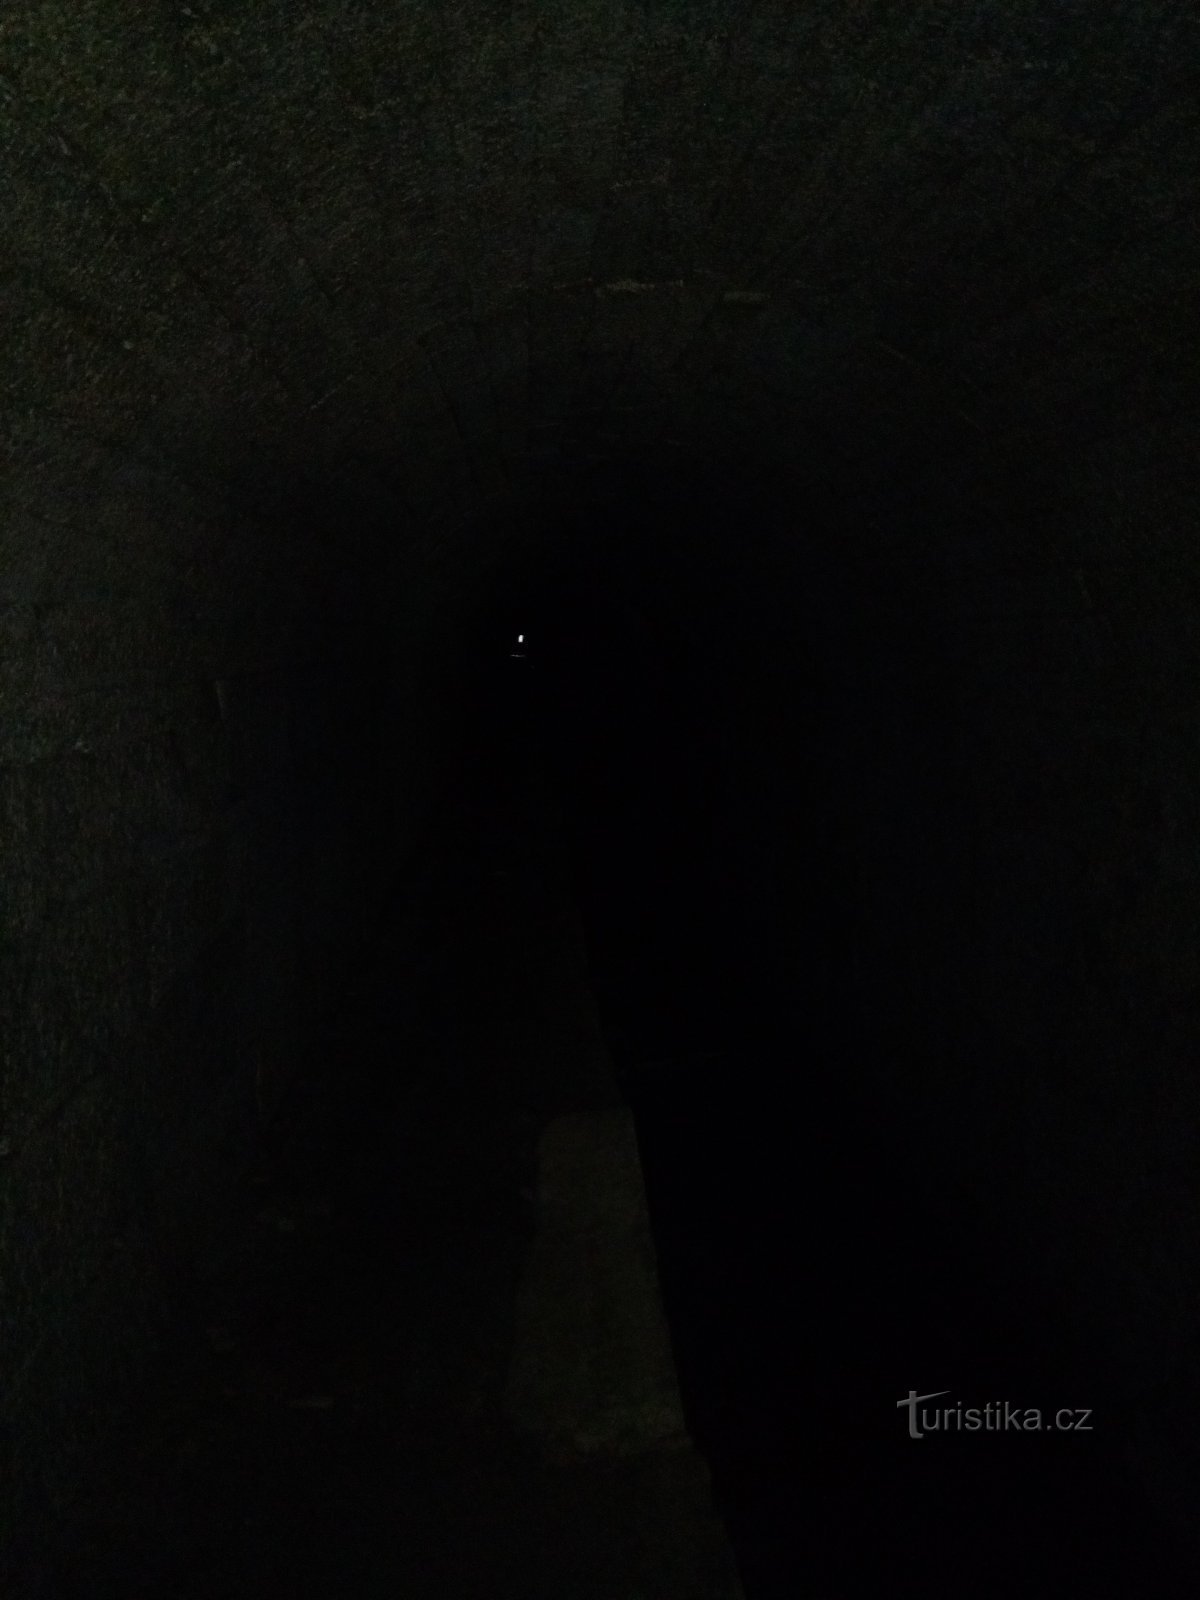 Luz no fim do túnel